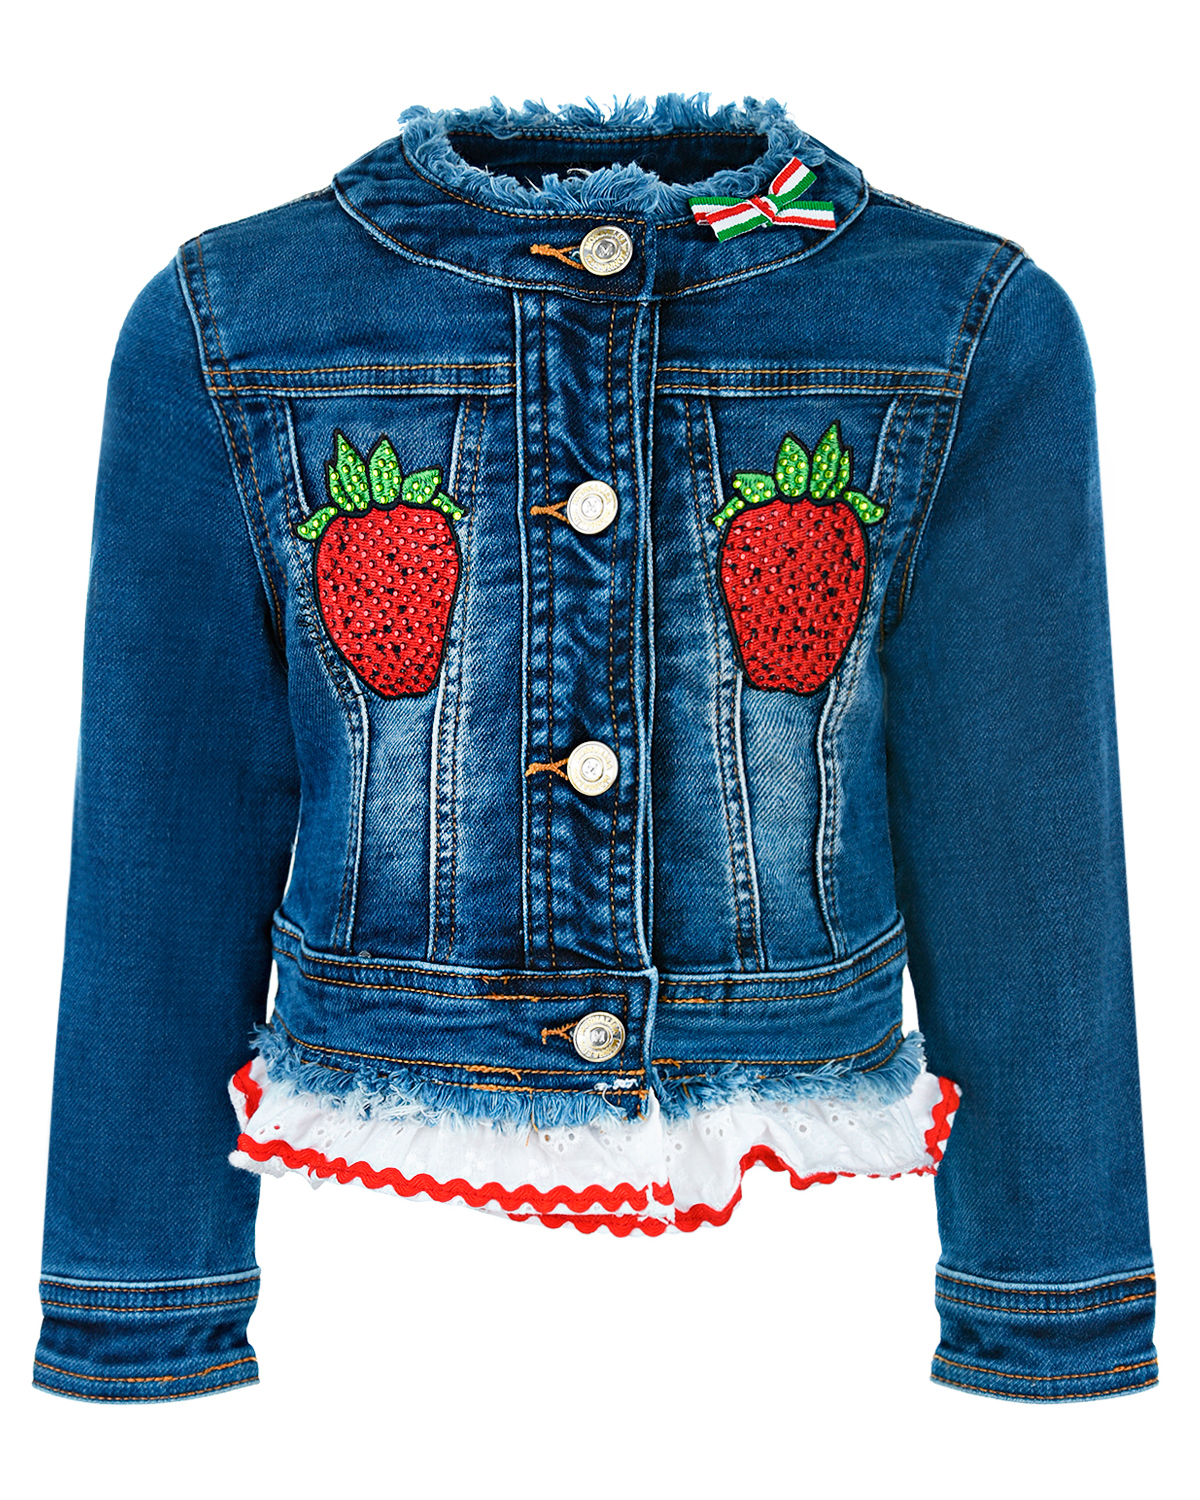 Джинсовая куртка с декором "Клубника" Monnalisa детская, размер 110, цвет синий - фото 1